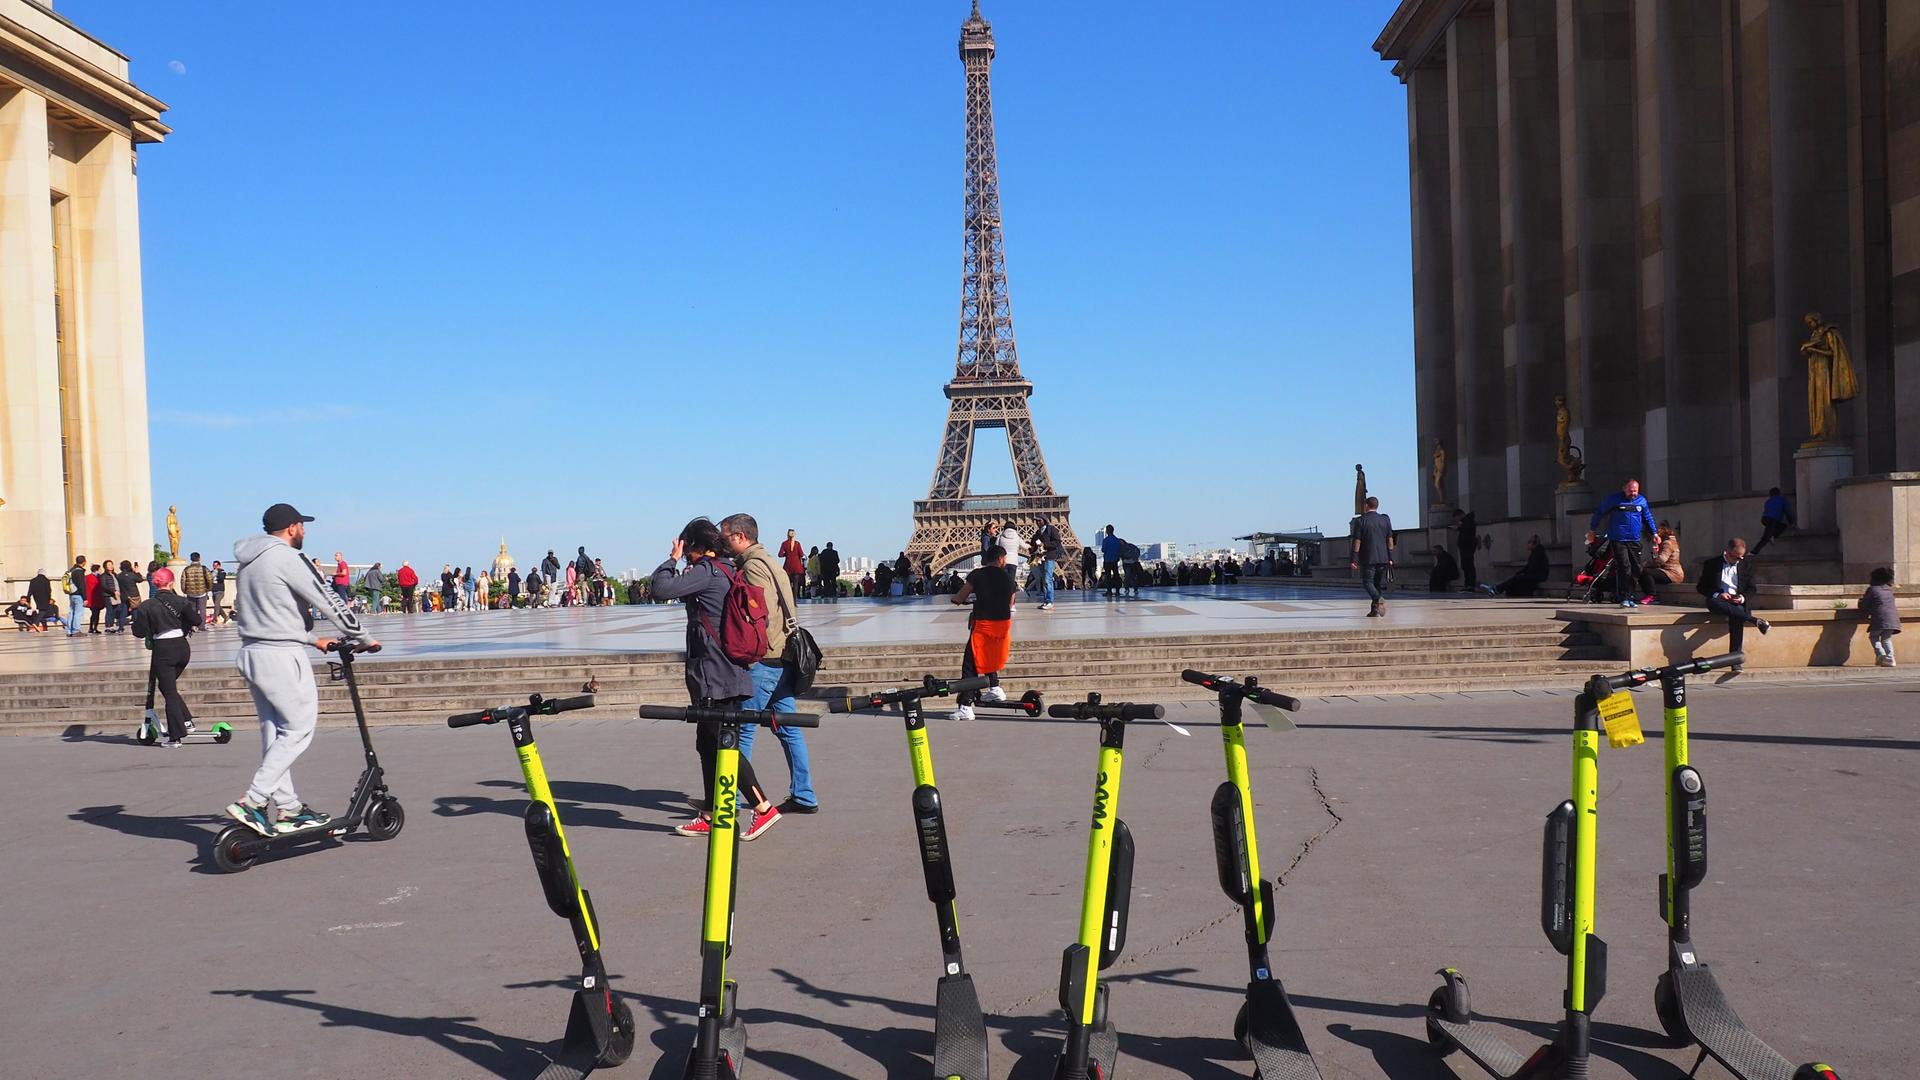 Mehrere E-Scooter stehen unweit des Pariser Eifelturms auf einem Platz.